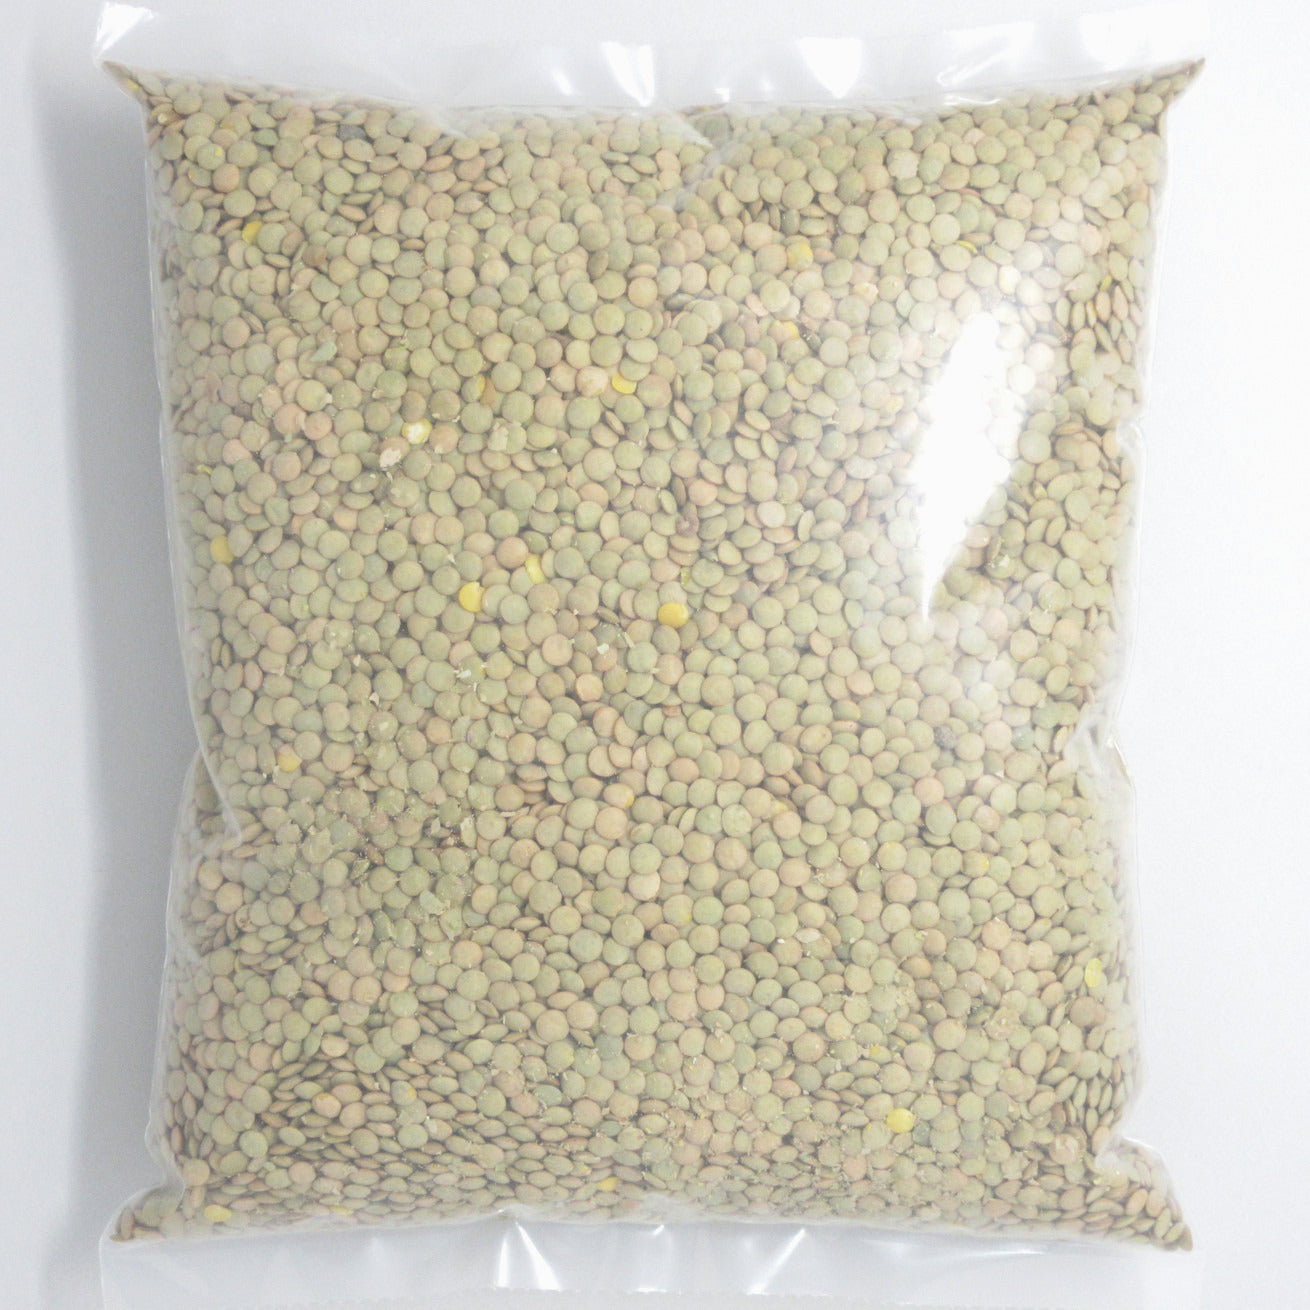 Flour Barrel product image - Green Lentils